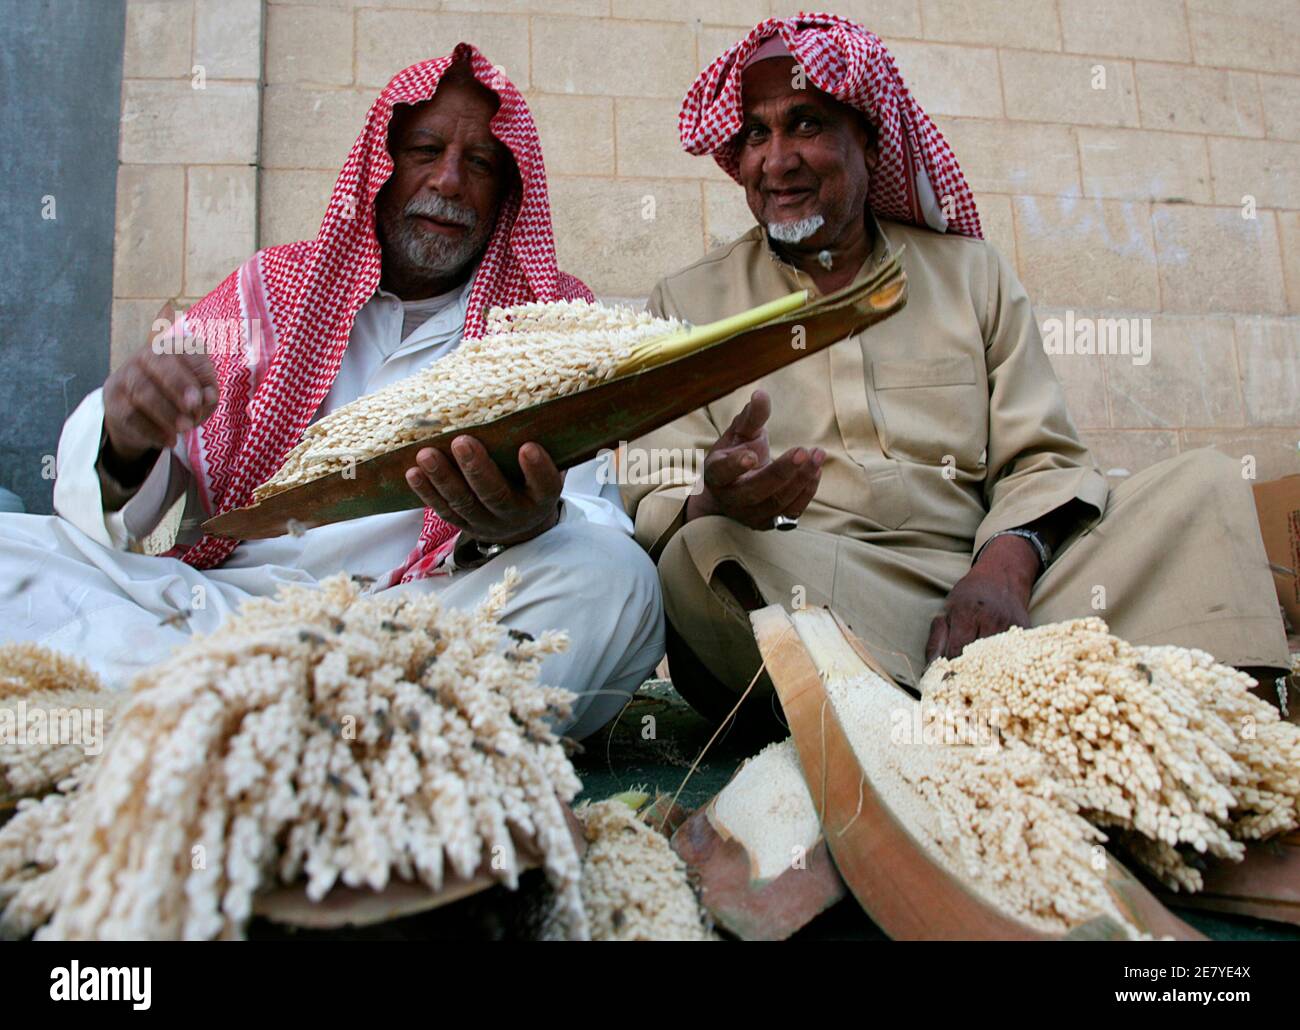 Straßenhändler verkaufen Palmenpollen in Riad 3. März 2008. Der Pollen wird bei der Herstellung eines lokalen Aphrodisiakums verwendet, das bei Männern beliebt ist. REUTERS/Fahad Shadeed (SAUDI-ARABIEN) Stockfoto